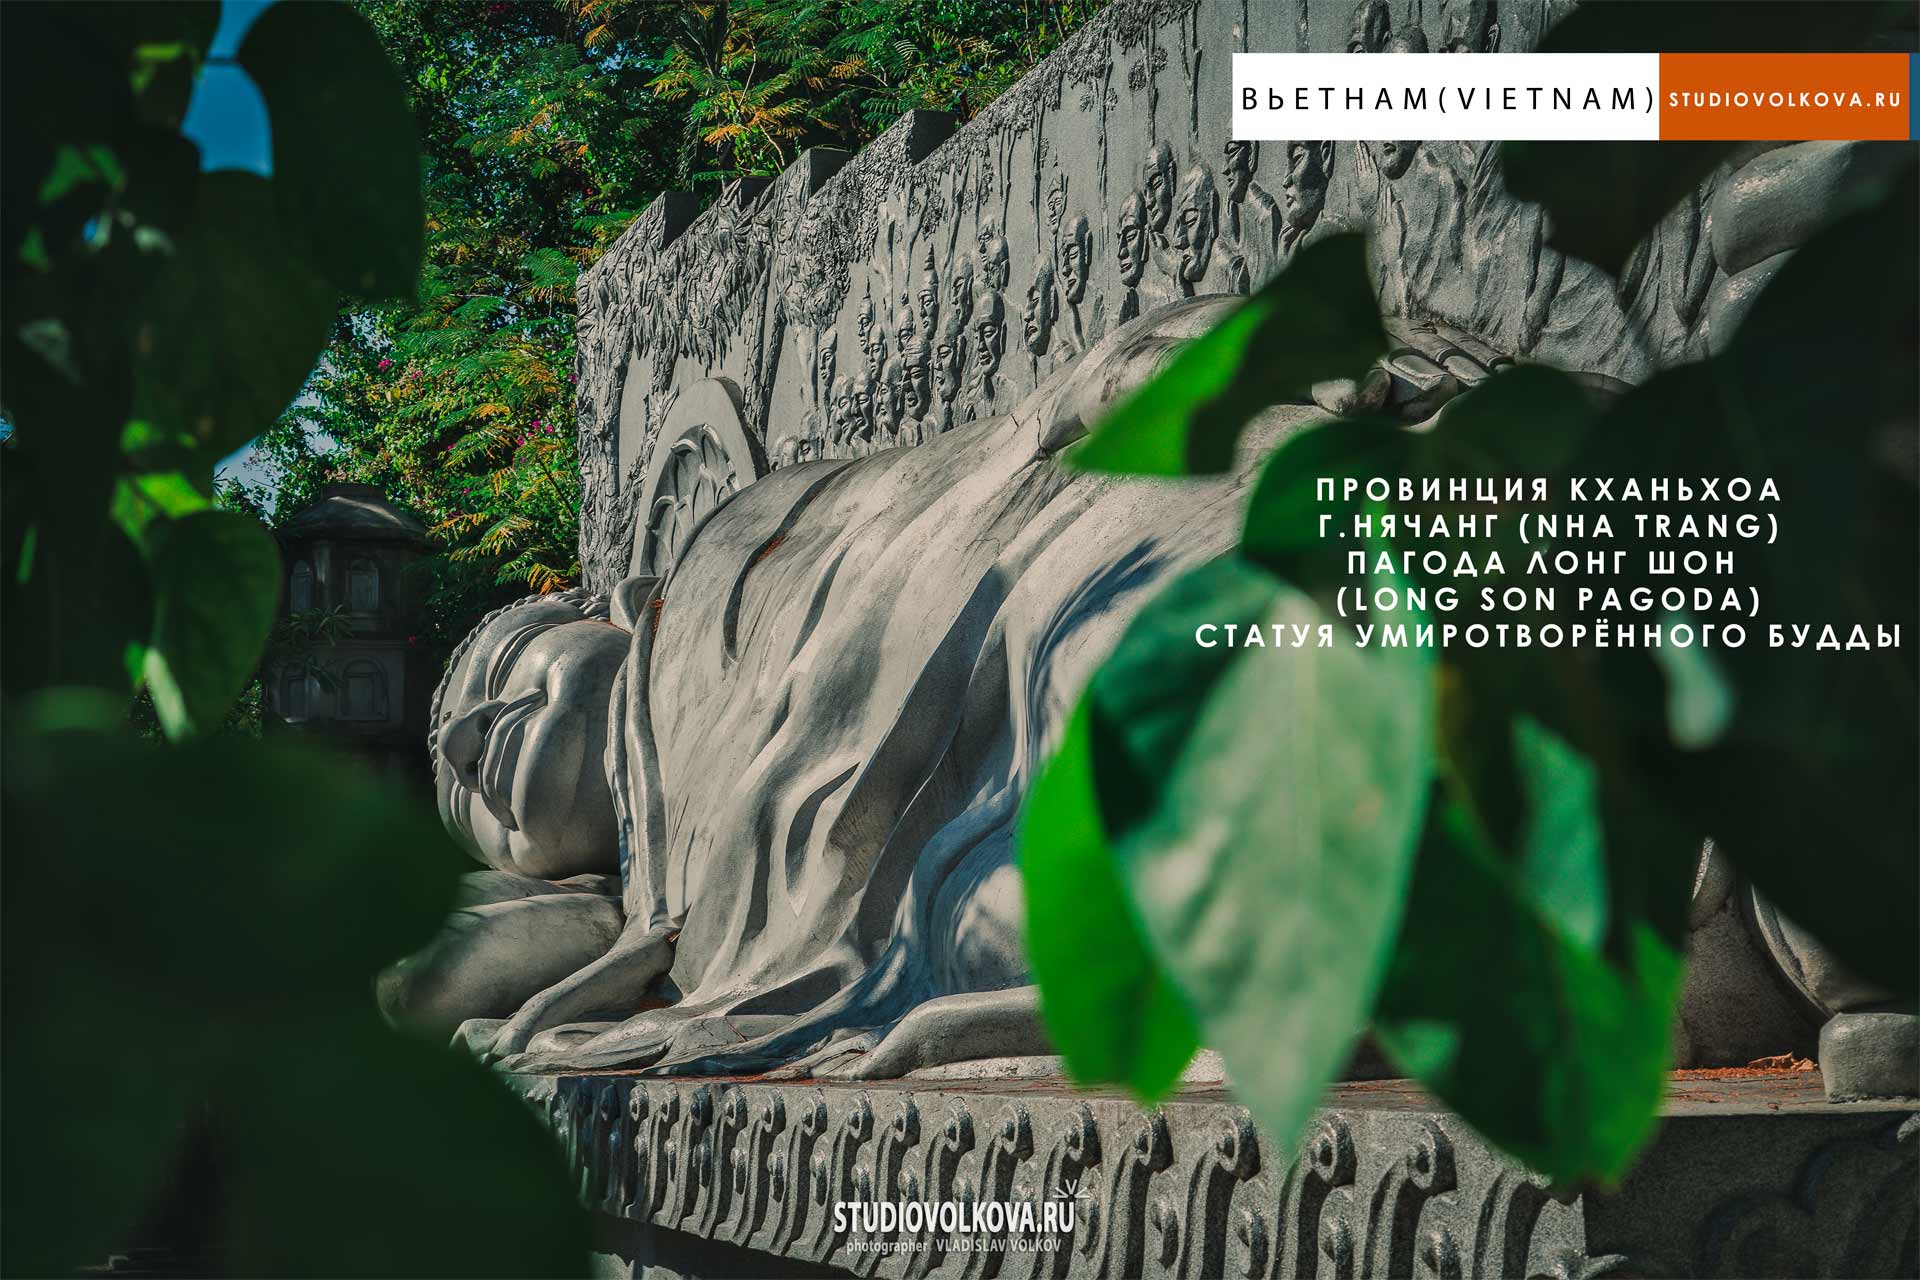 Умиротворённый Будда. Пагода Лонг Шон. г. Нячанг (Nha Trang). фотограф Владислав ВОЛКОВ